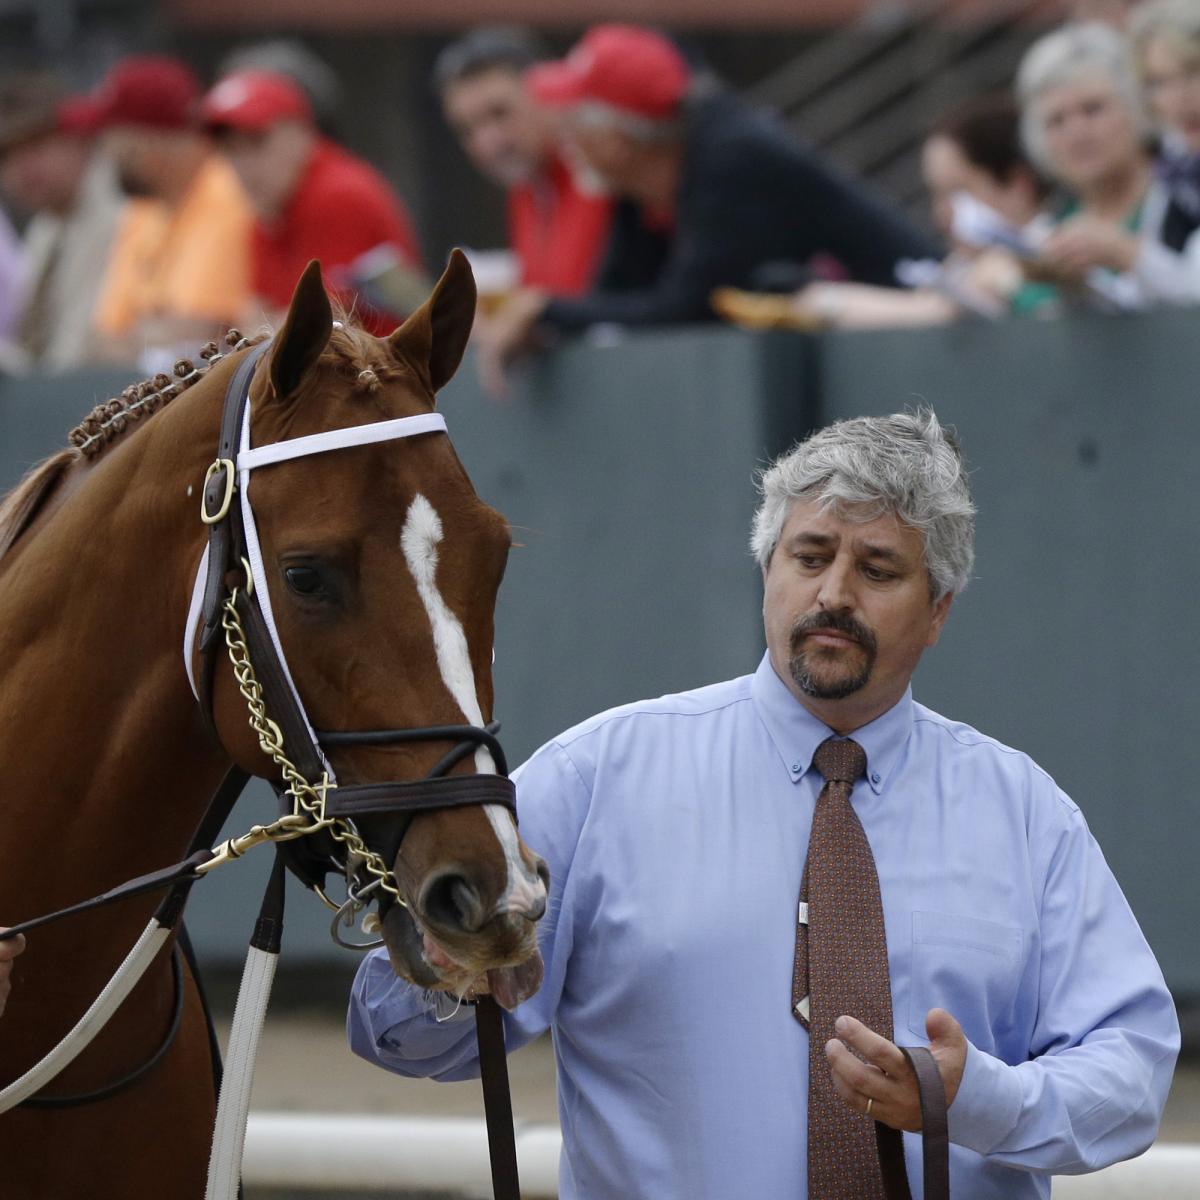 Horse Trainer Steve Asmussen Under Investigation After Allegations of